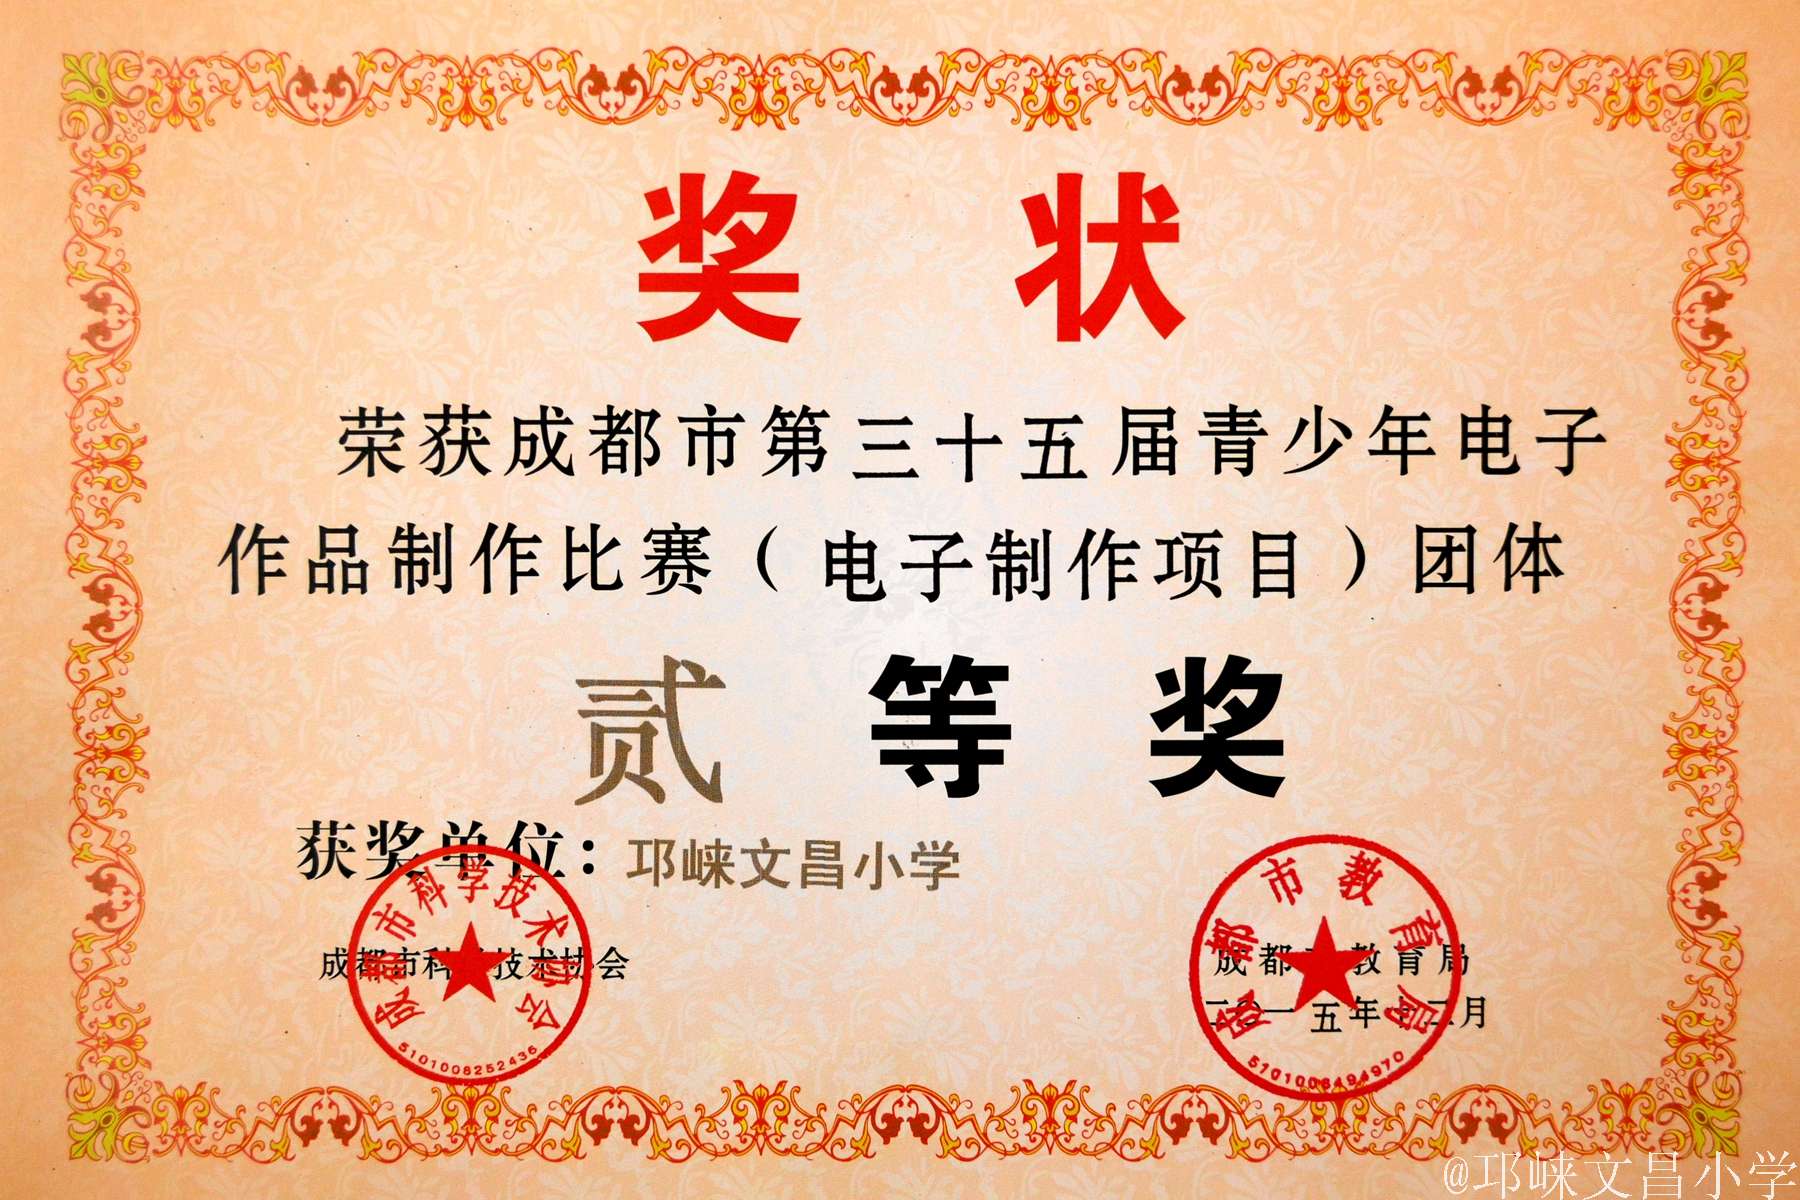 文昌小学成都市35届青少年科技电子作品比赛一等奖证书2015-12